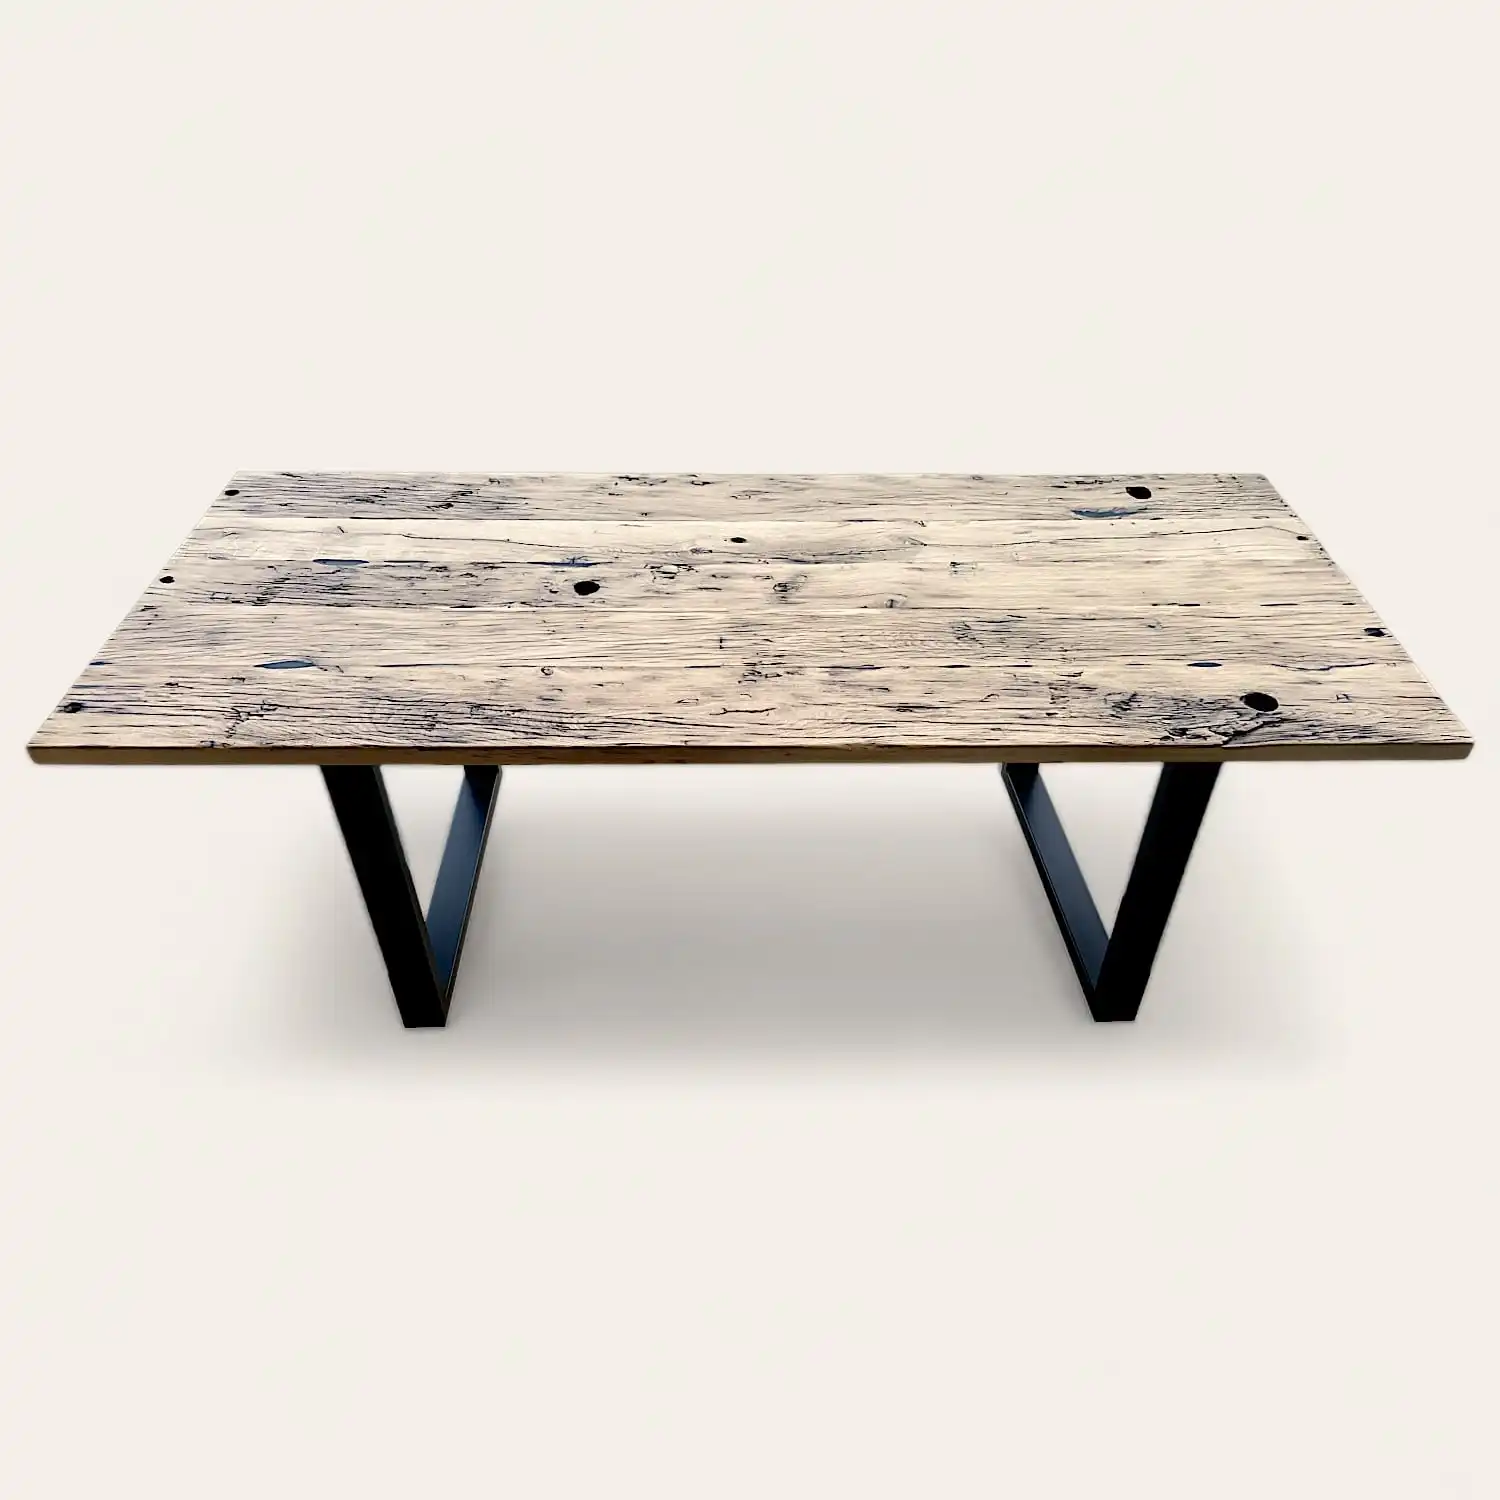  Une table en bois massif ancestrale. 